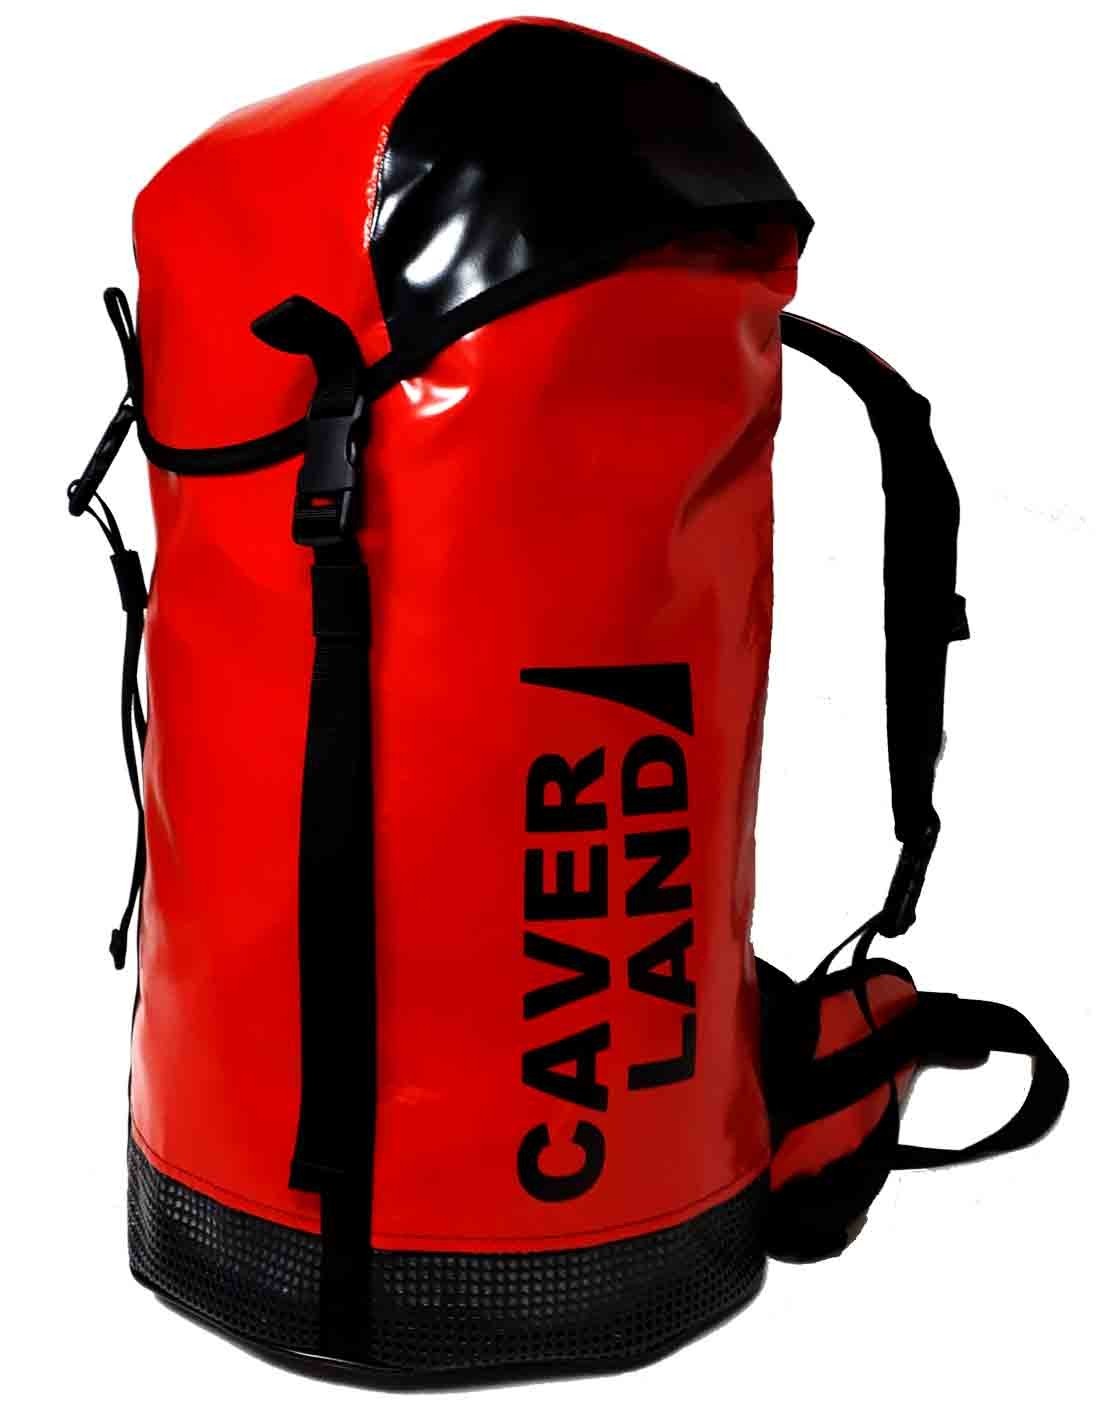  Caverland Trevelez 45 Rojo mochilas de barrancos